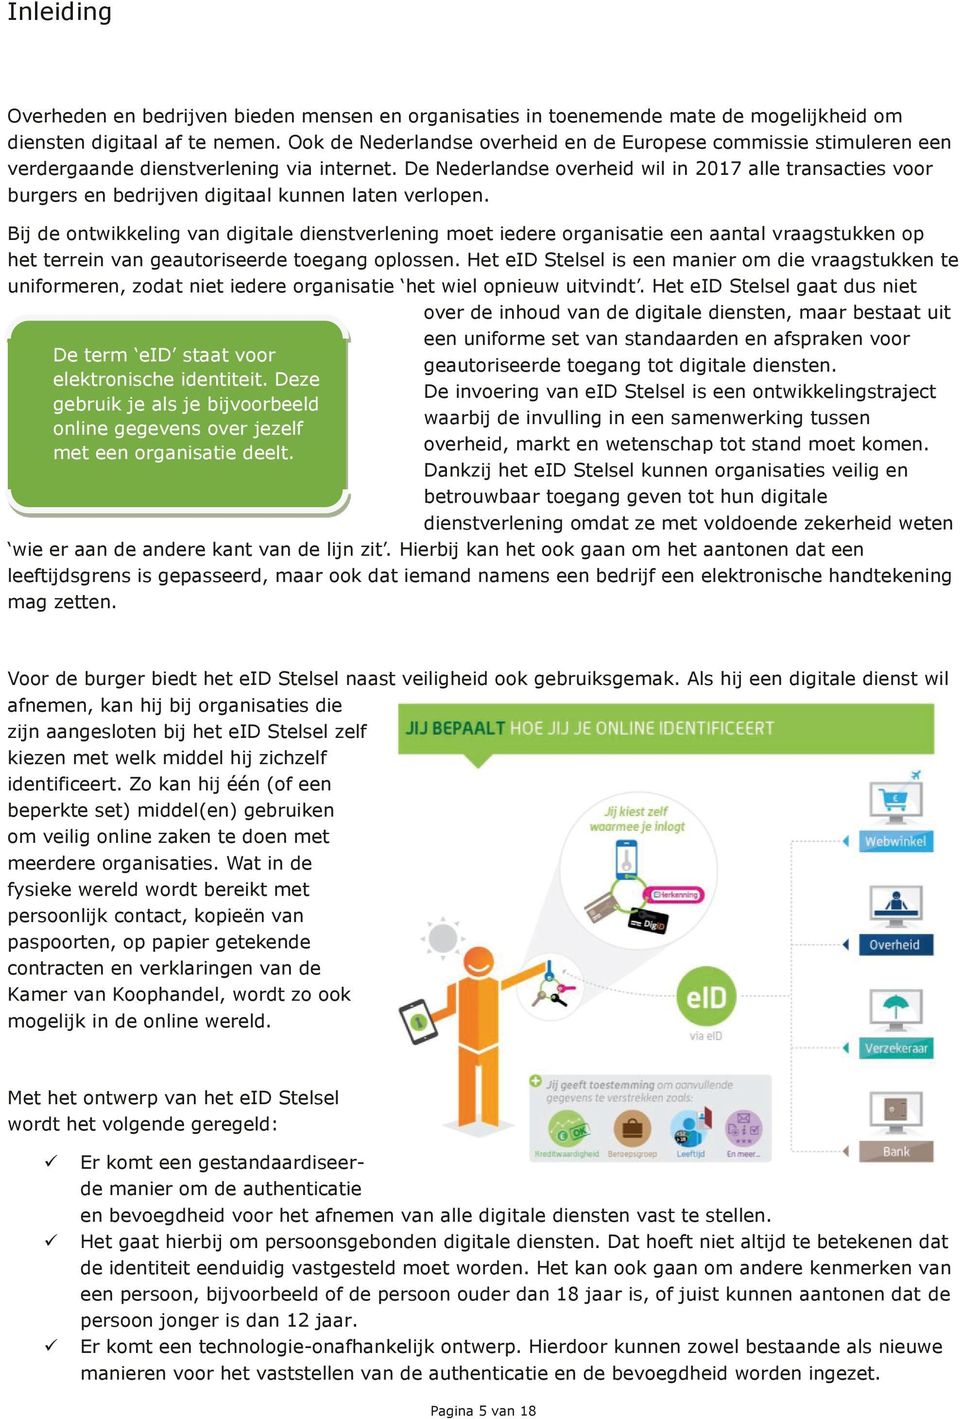 De Nederlandse overheid wil in 2017 alle transacties voor burgers en bedrijven digitaal kunnen laten verlopen.